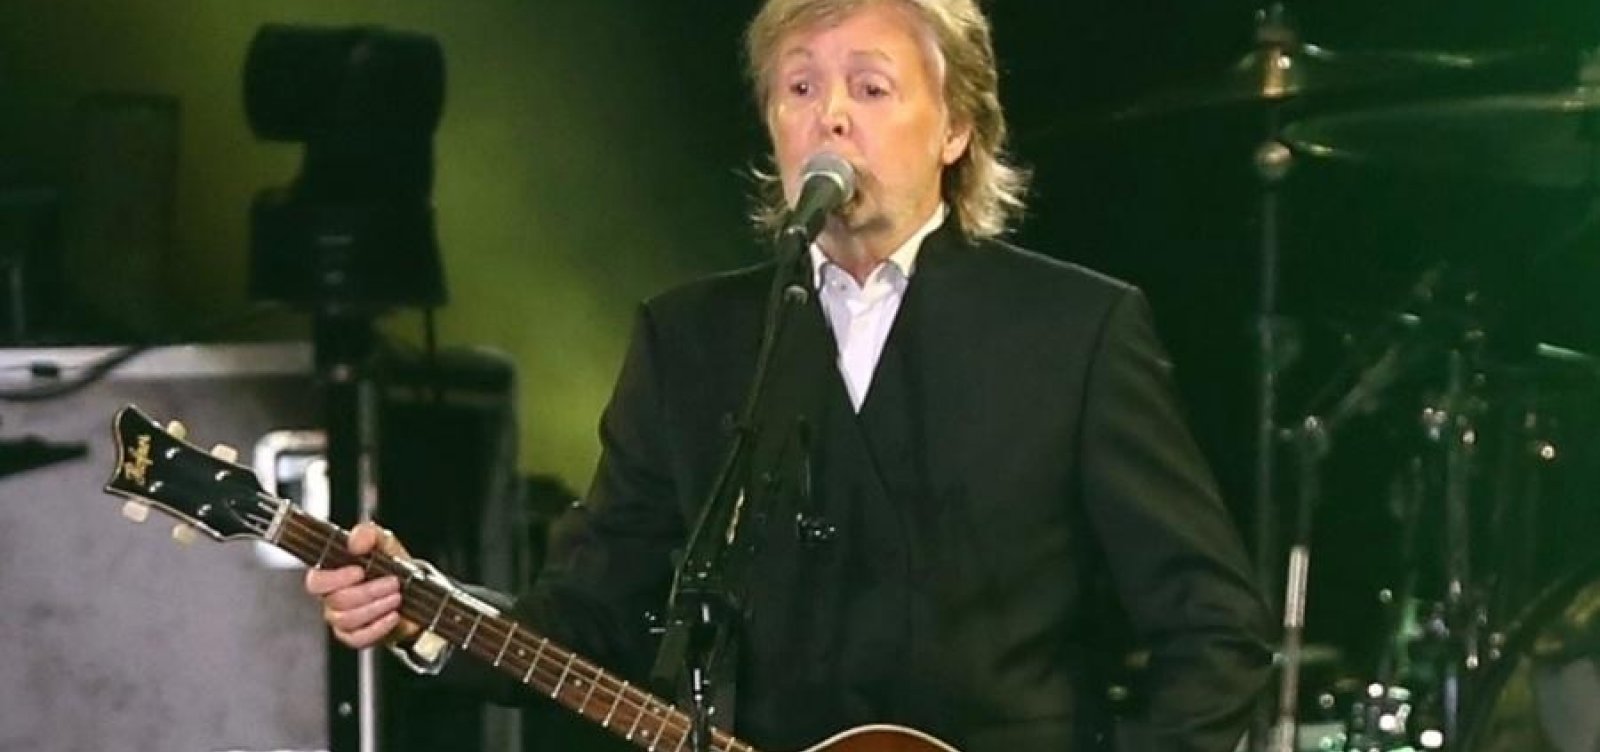 "O pai ta on",  Paul McCartney usa expressão brasileira pra anunciar show no Brasil 